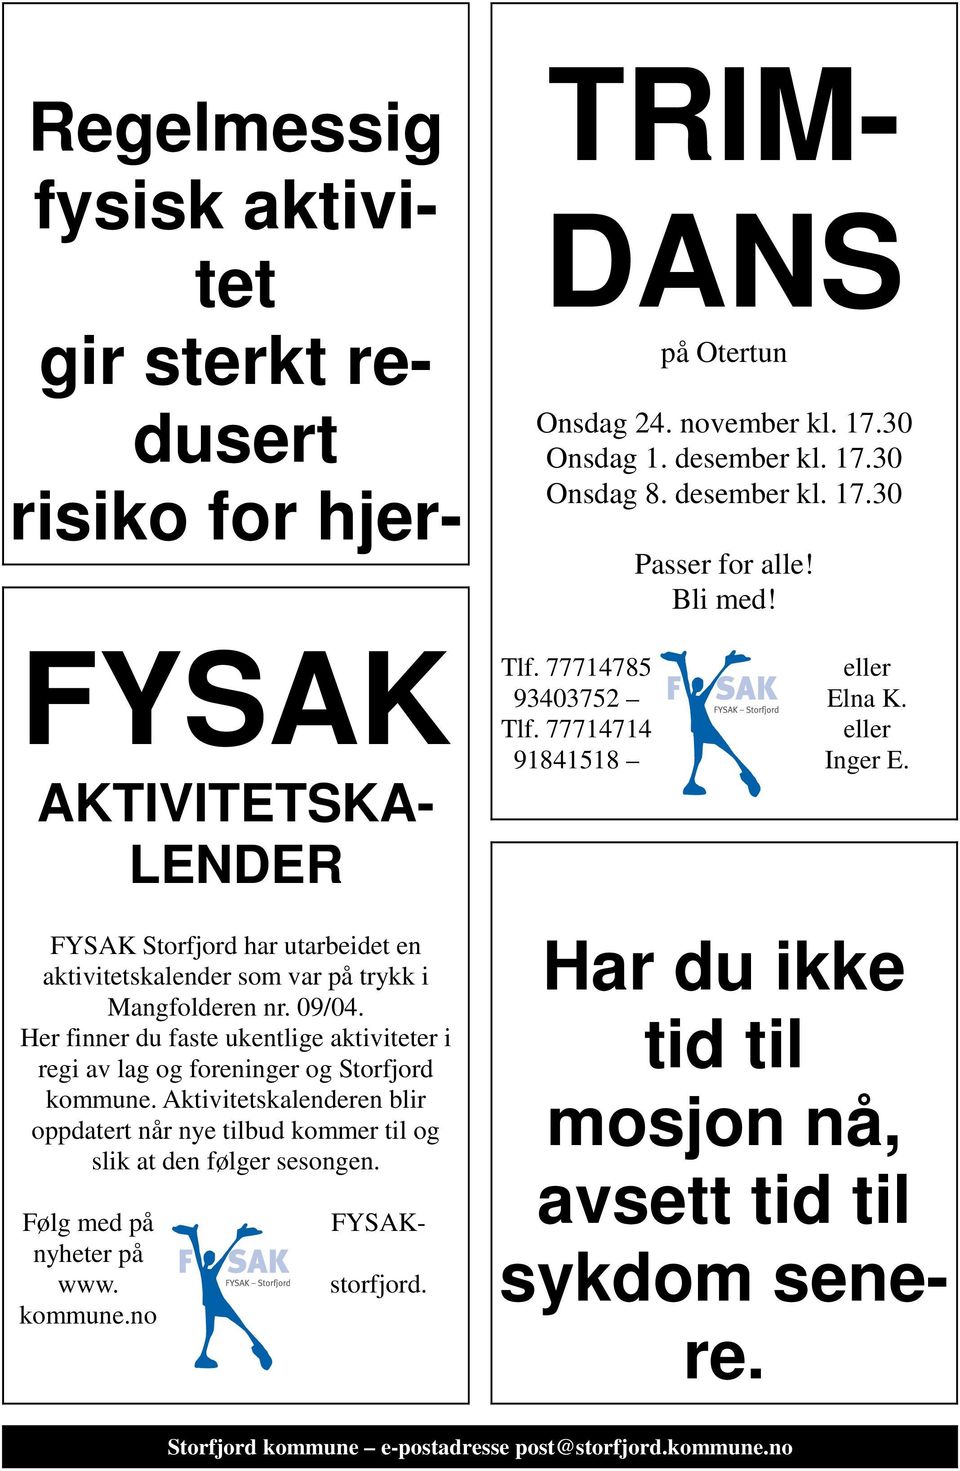 Aktivitetskalenderen blir oppdatert når nye tilbud kommer til og slik at den følger sesongen. FYSAK- Følg med på nyheter på www. kommune.